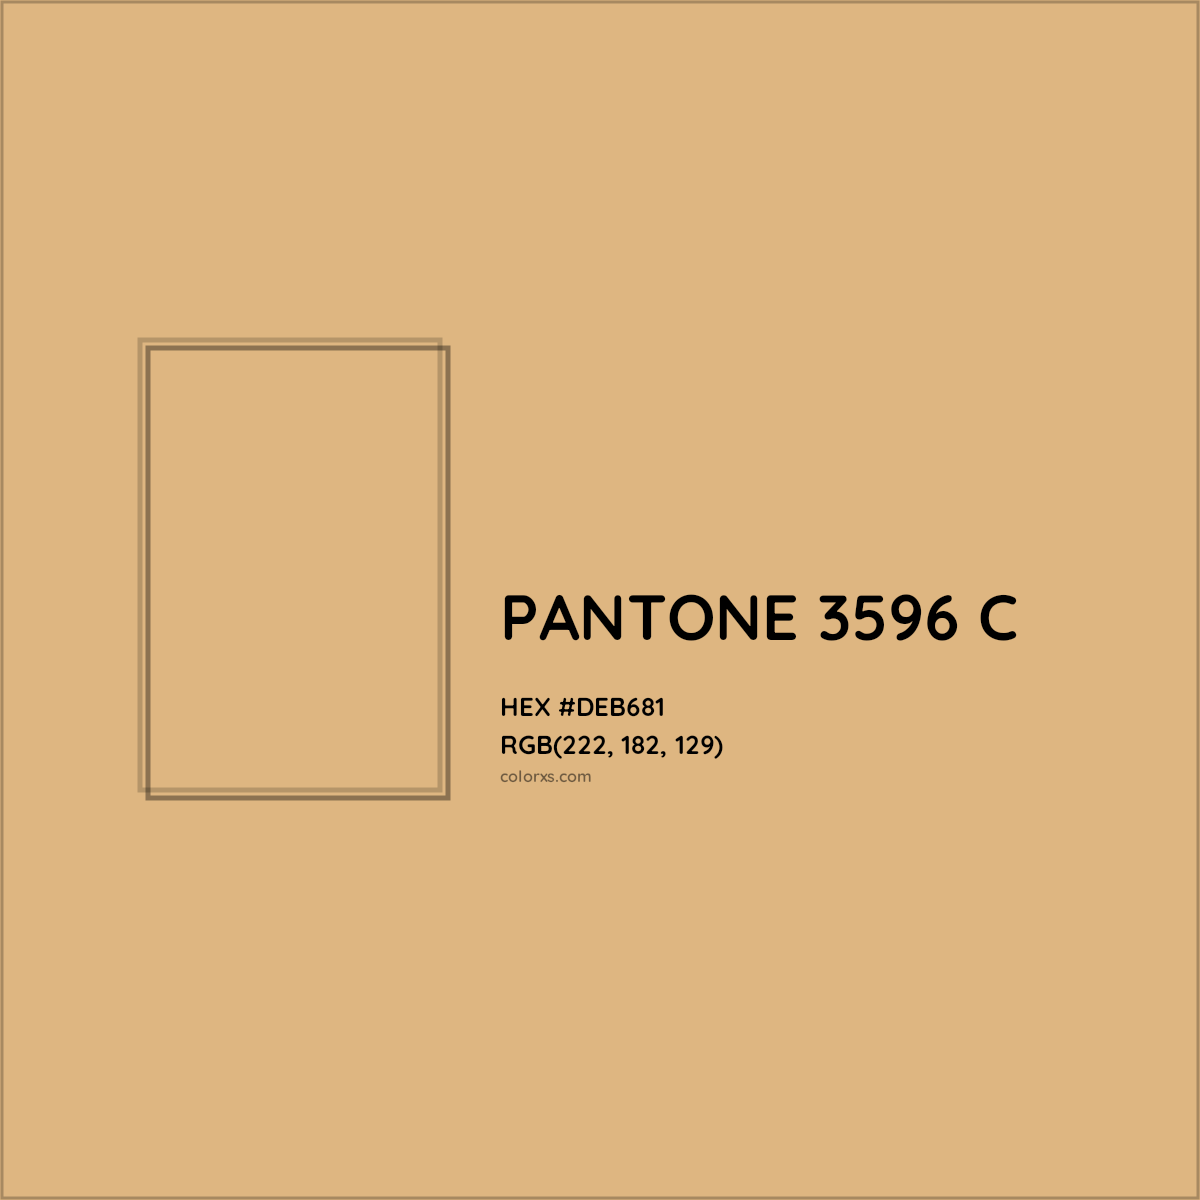 HEX #DEB681 PANTONE 3596 C CMS Pantone PMS - Color Code